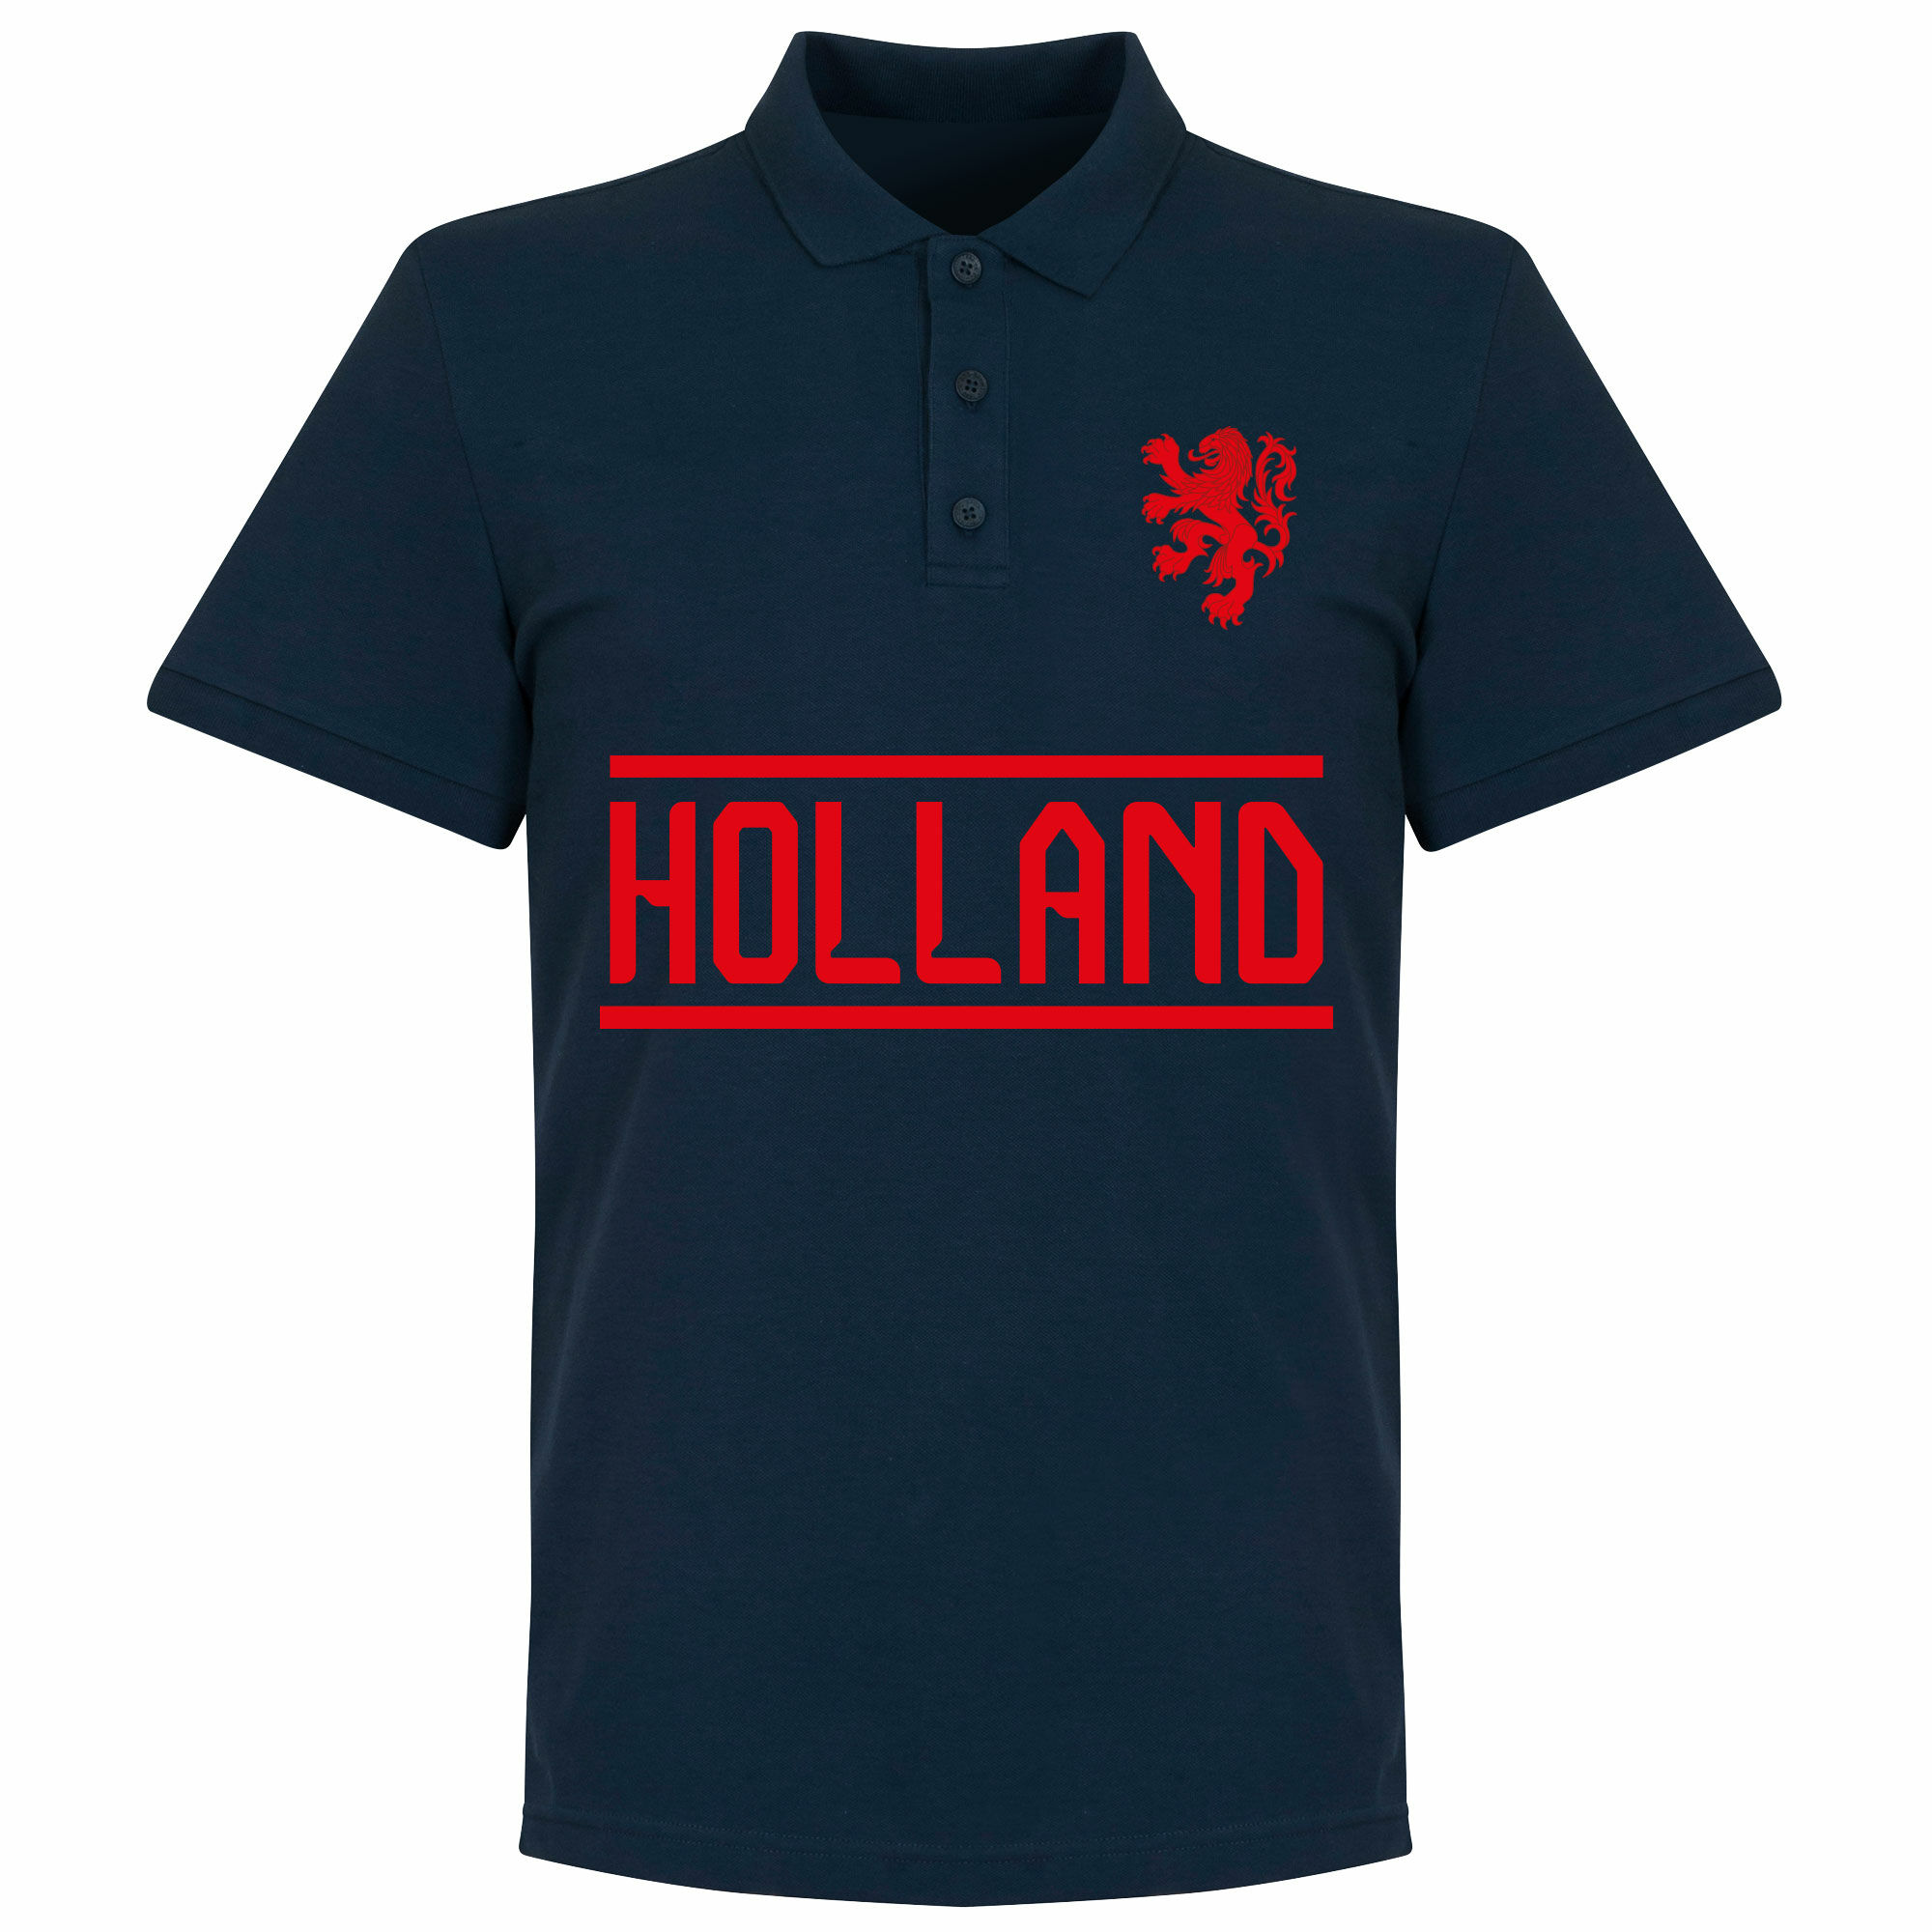 Nizozemí - Tričko s límečkem - modré